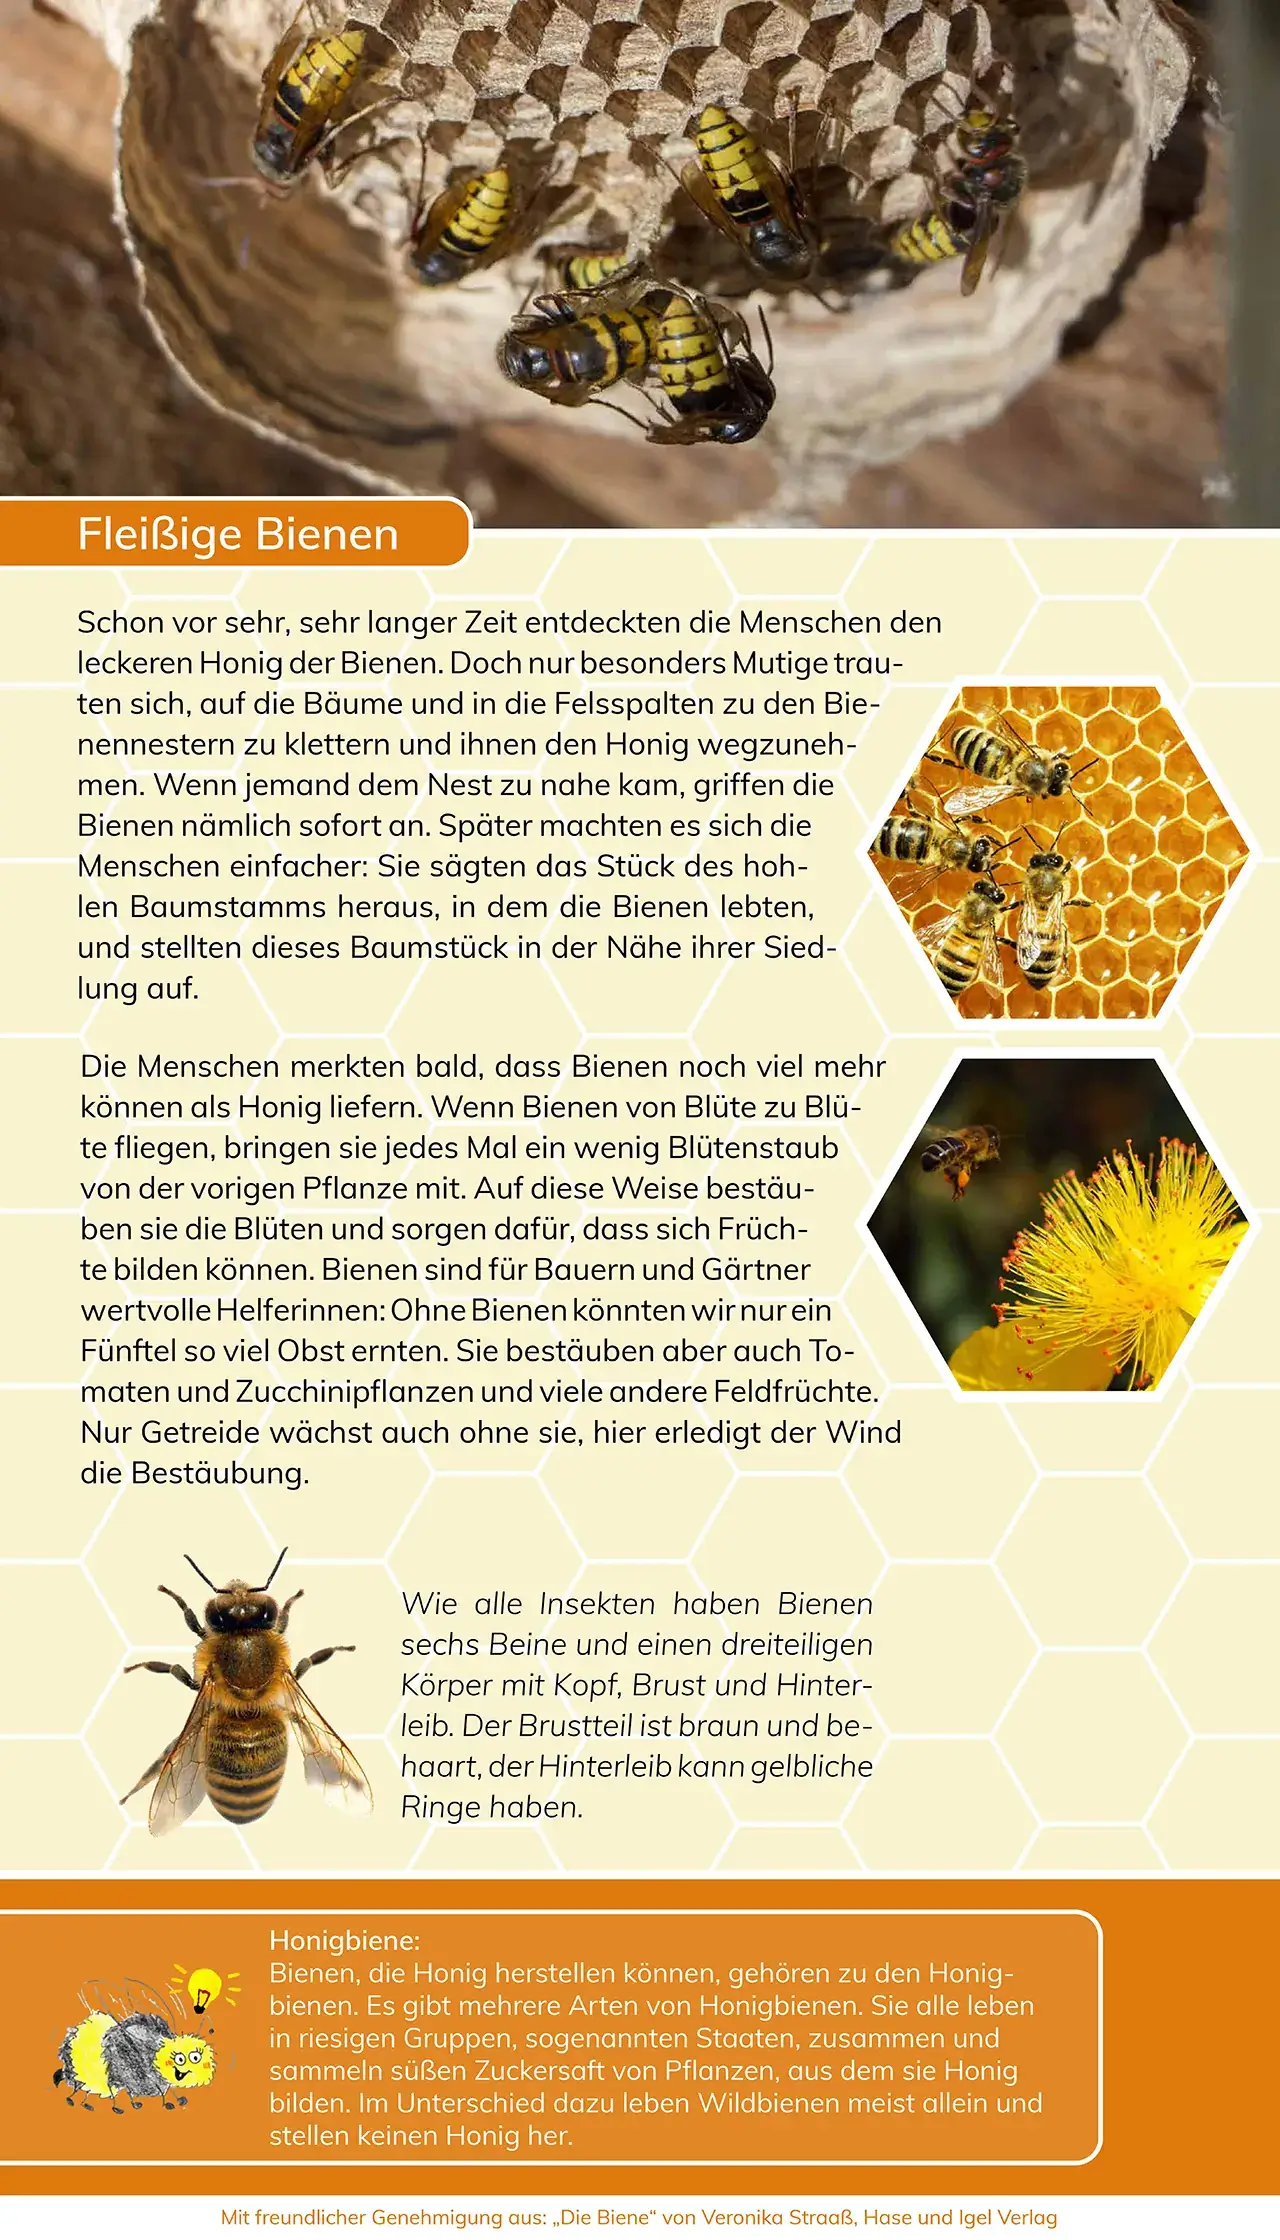 Projekte 2020 - Ausstellung - Mit den Bienen durch das Jahr - fleißige Bienchen